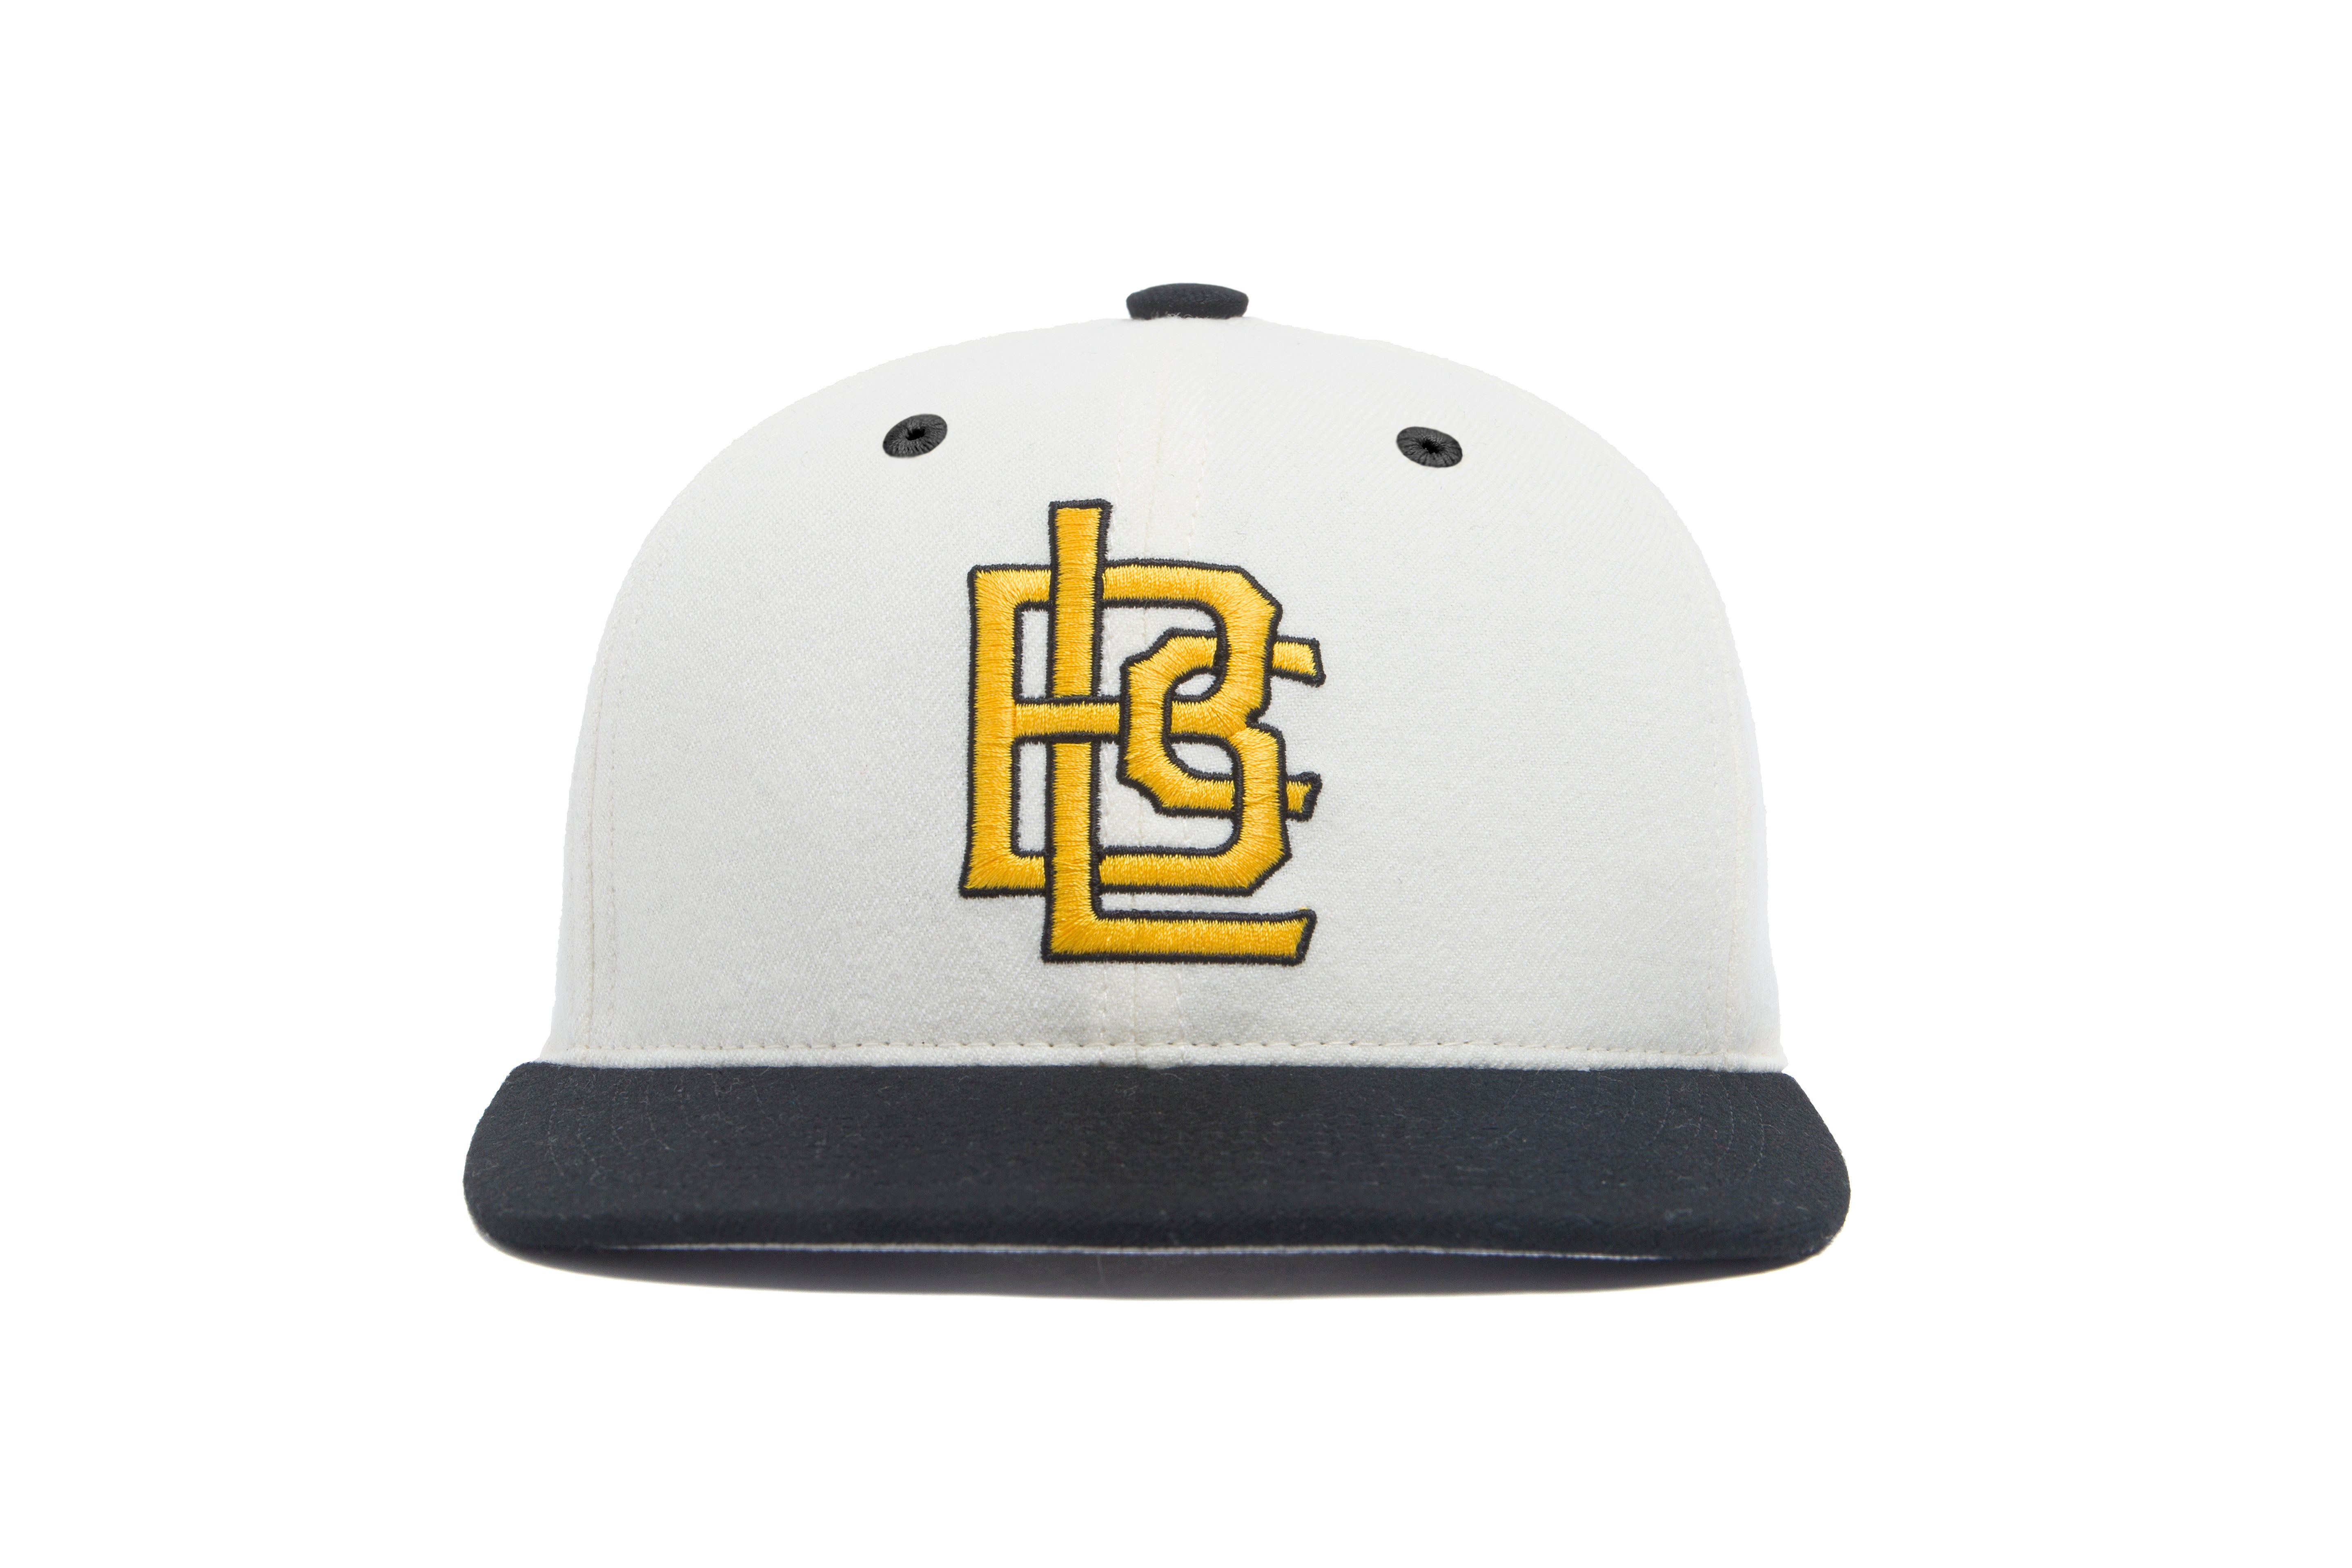 Long Beach Interlock Hat, Wool Baseball Cap